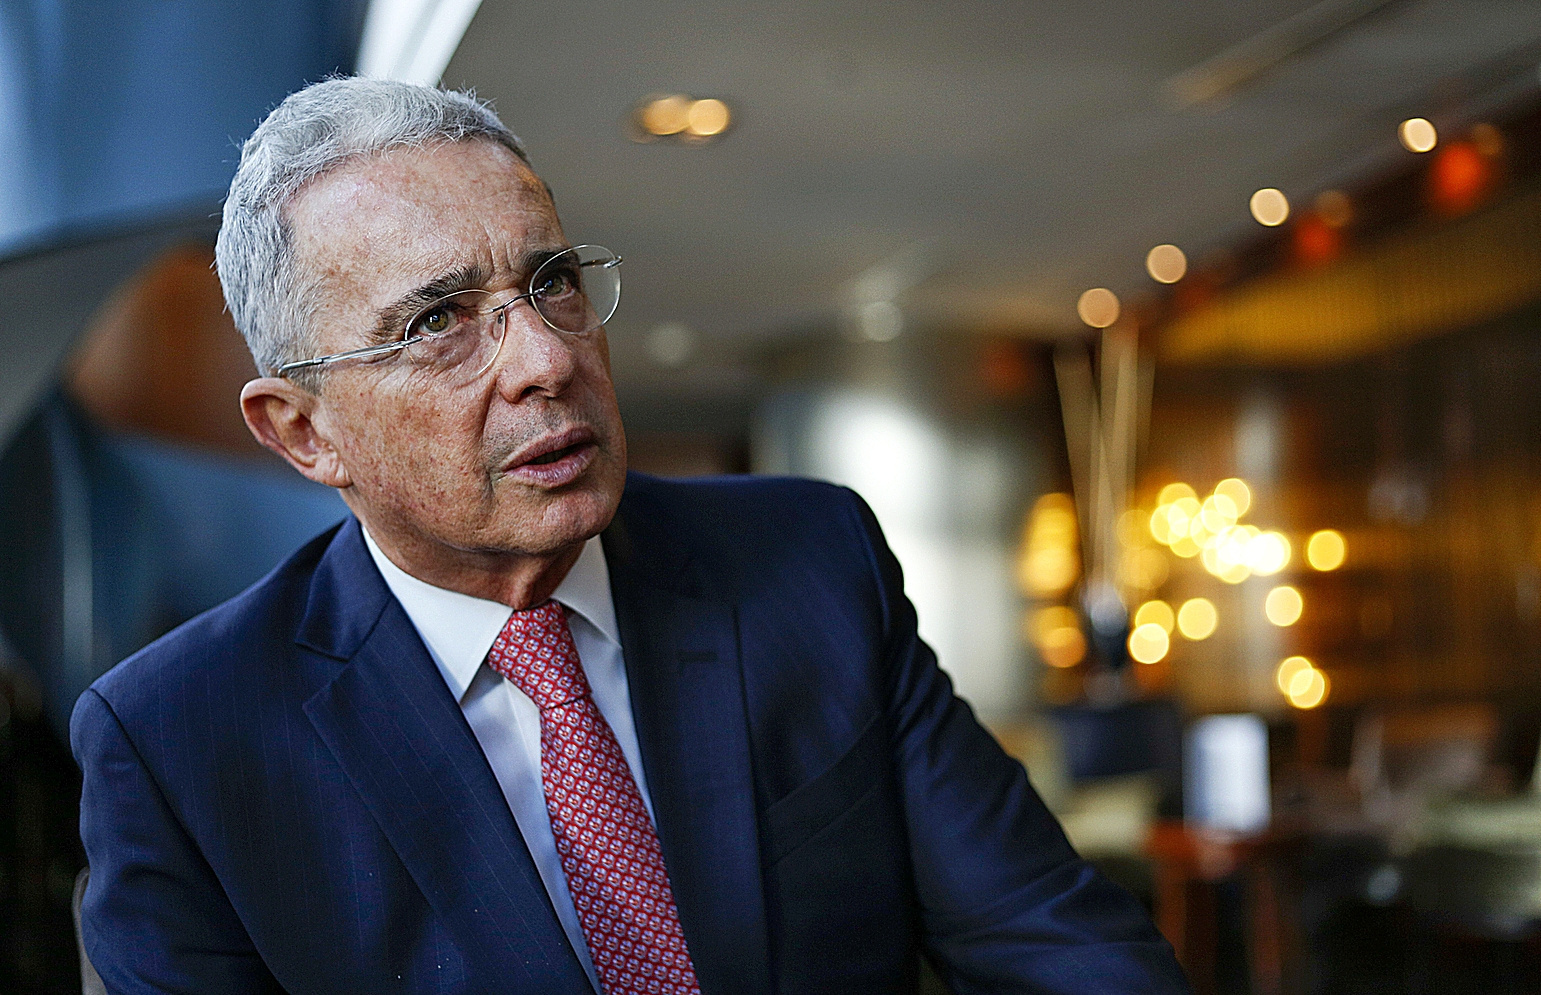 Álvaro Uribe: "A Duque le ha faltado autoridad" | Internacional